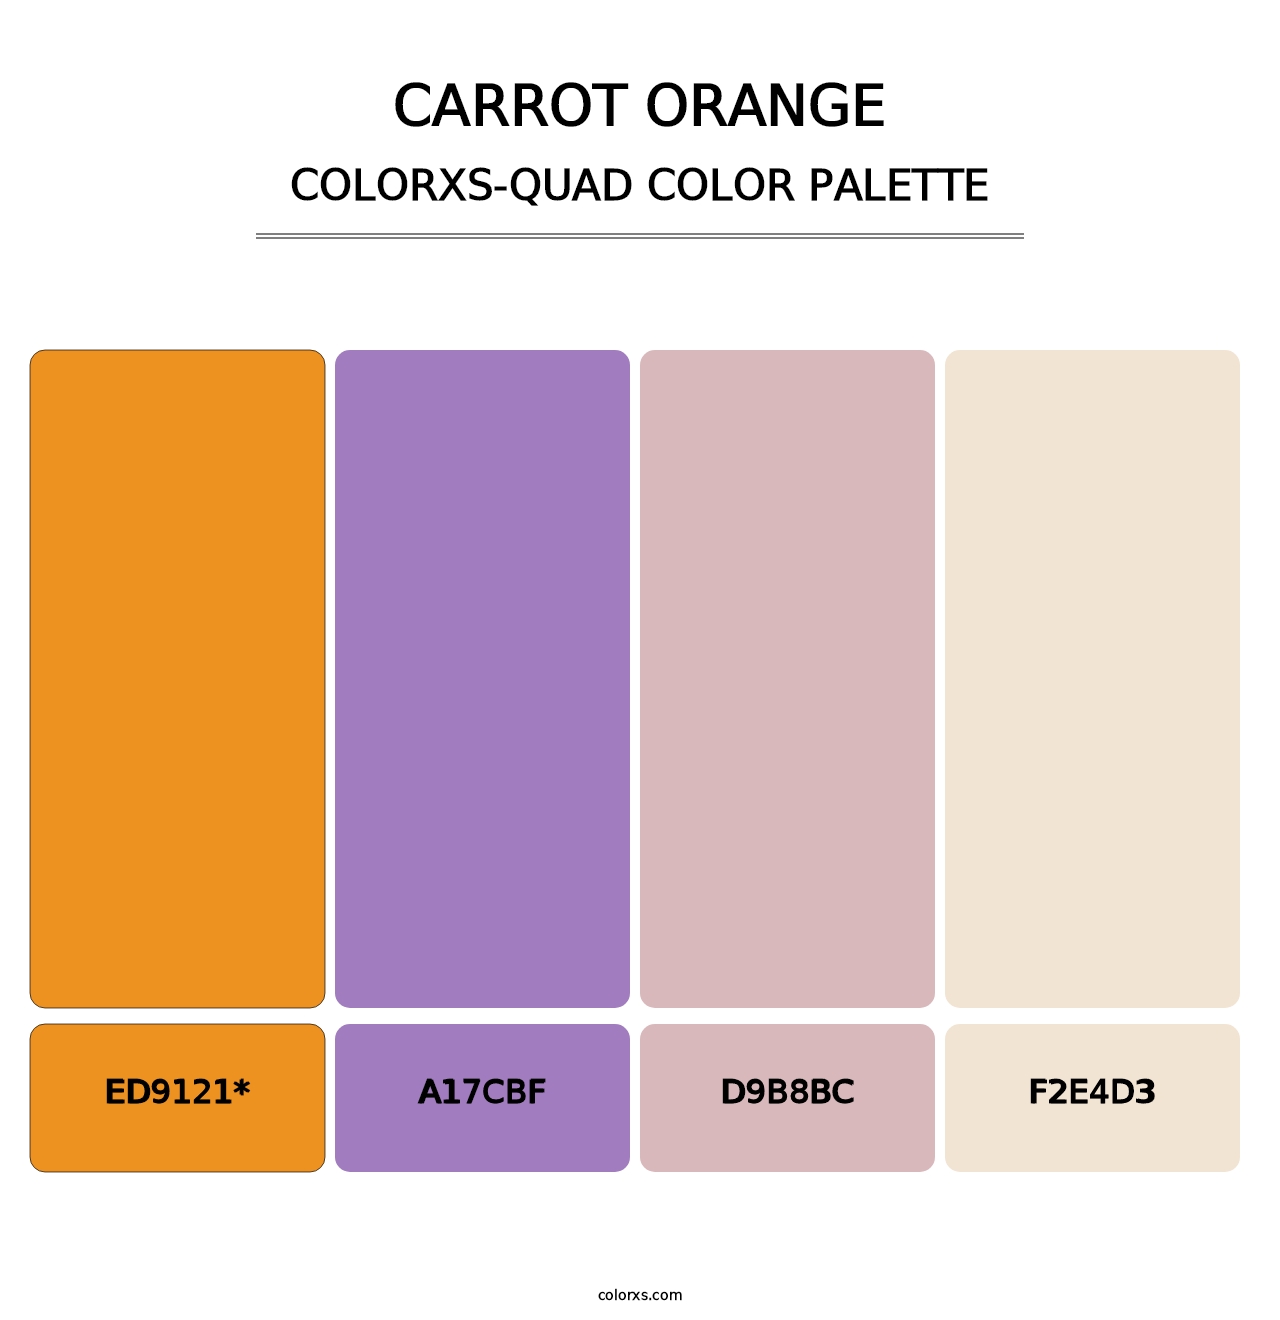 Carrot Orange - Colorxs Quad Palette